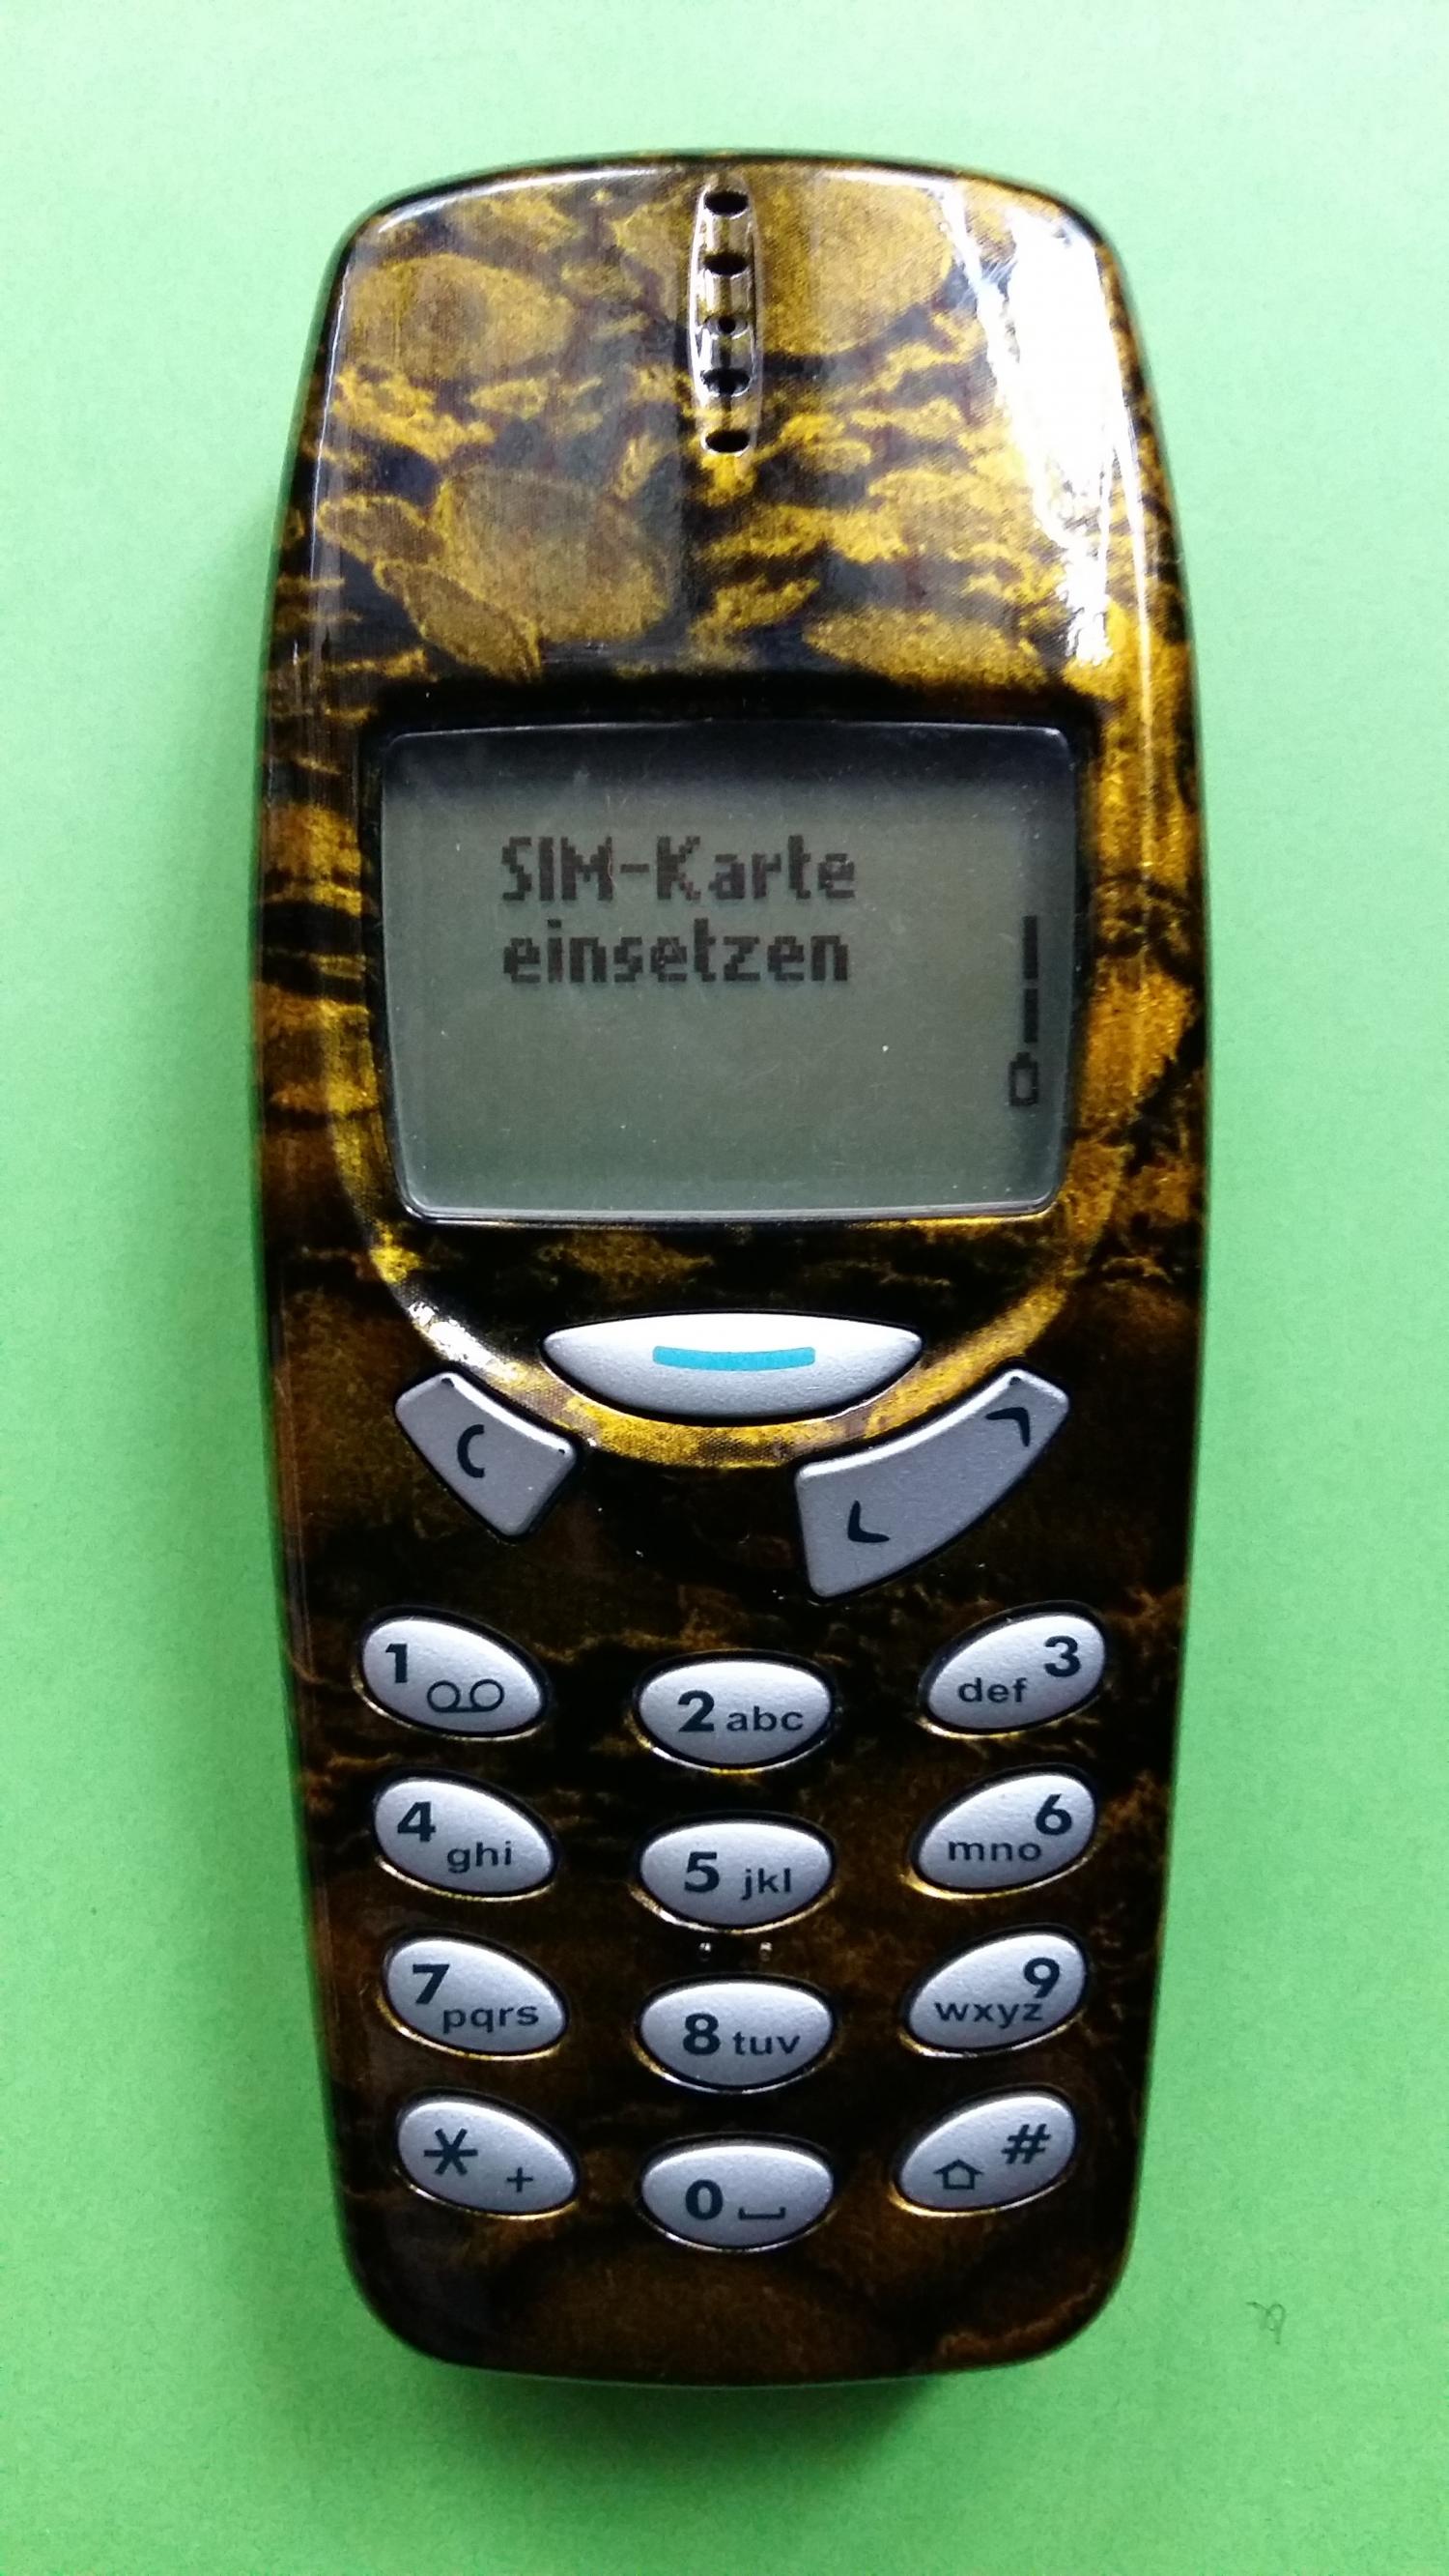 image-7306870-Nokia 3310 (12)1.jpg